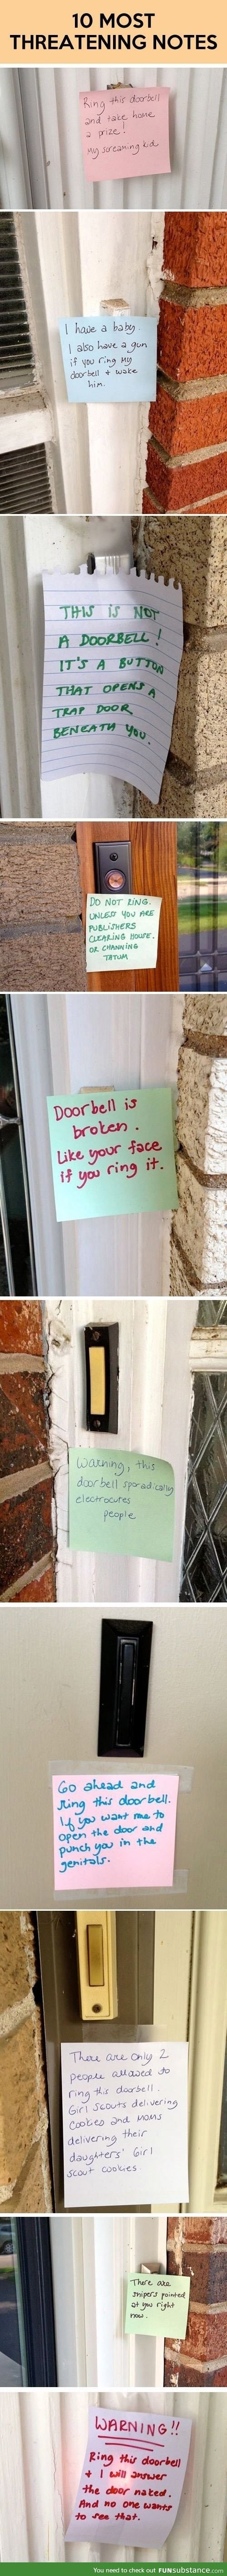 Doorbell notes